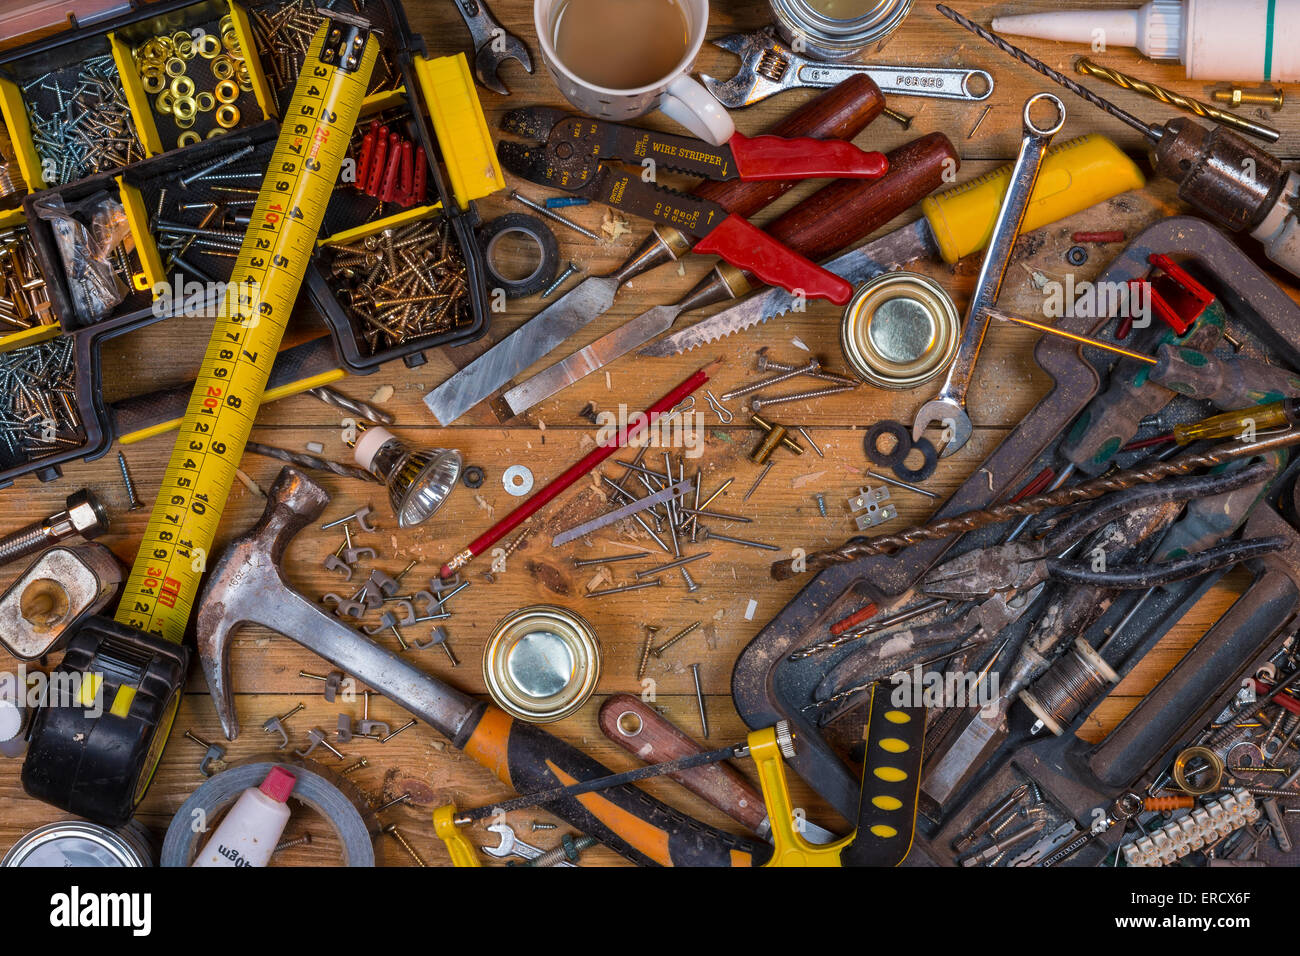 L'entretien de la maison - un désordre établi plein de vieux outils poussiéreux et des vis. Banque D'Images